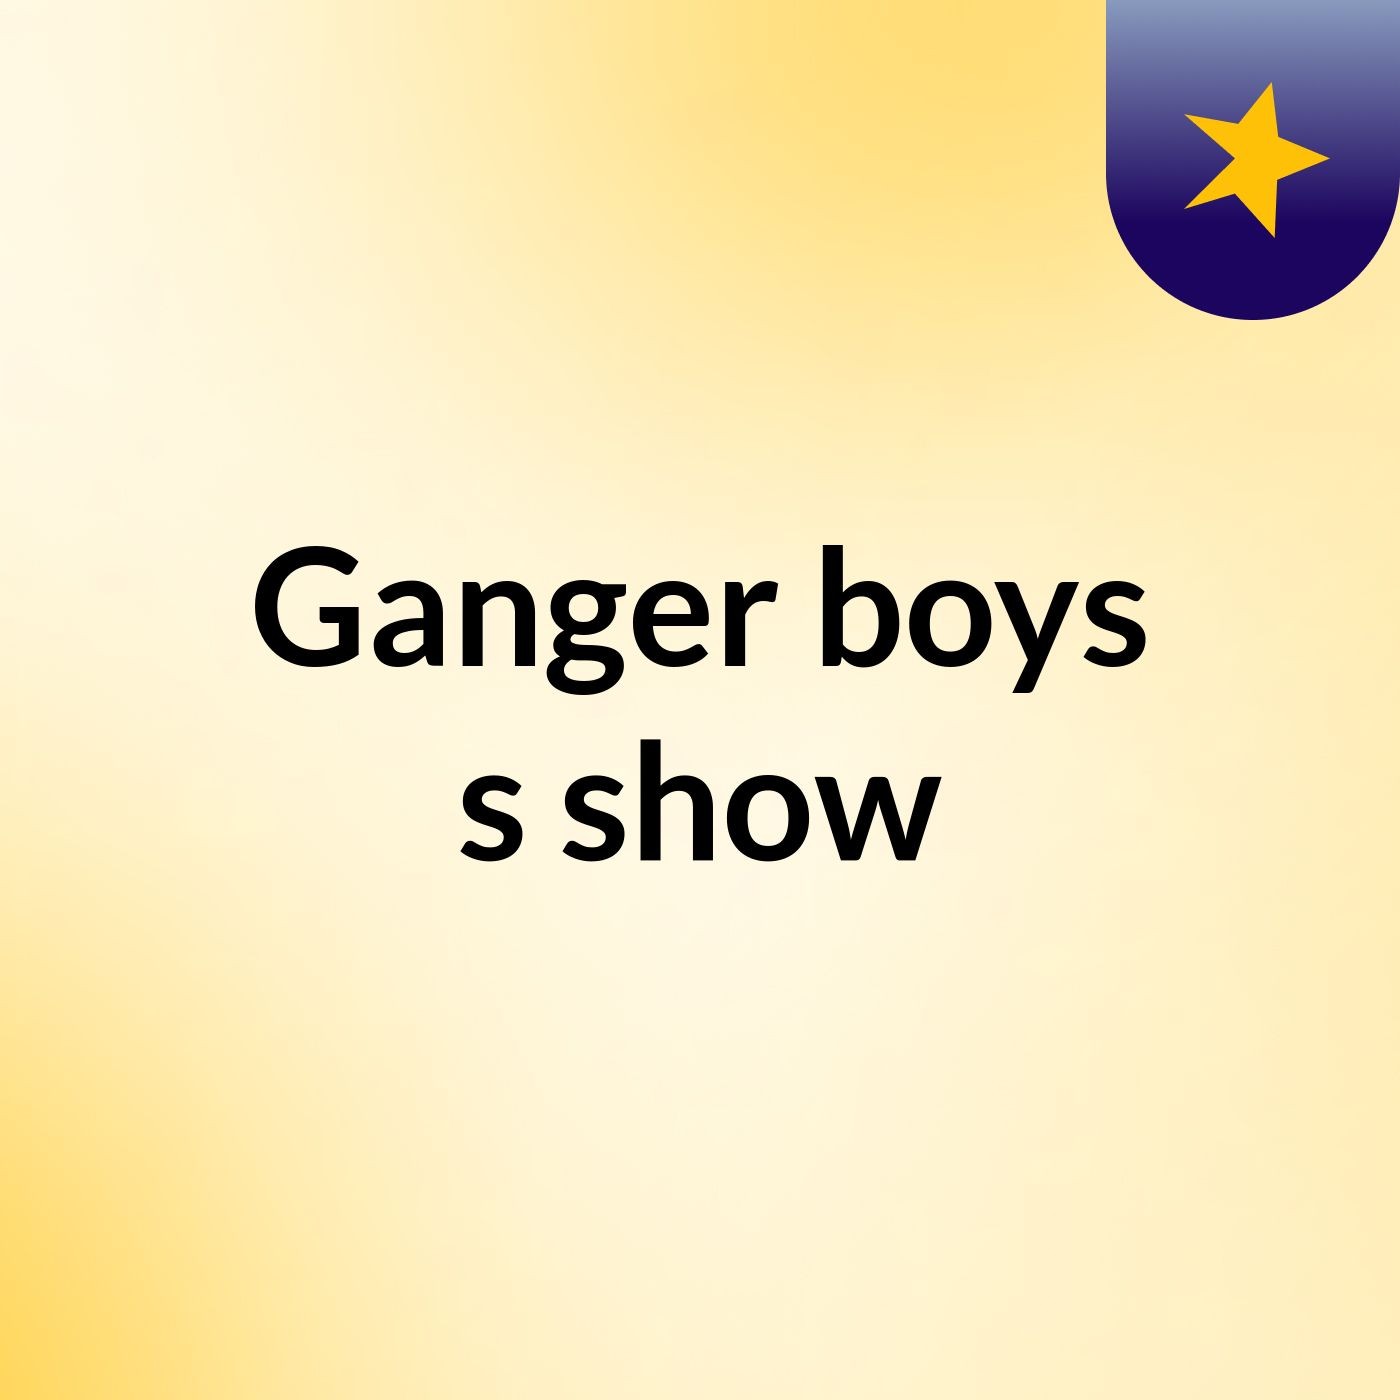 Ganger boys's show